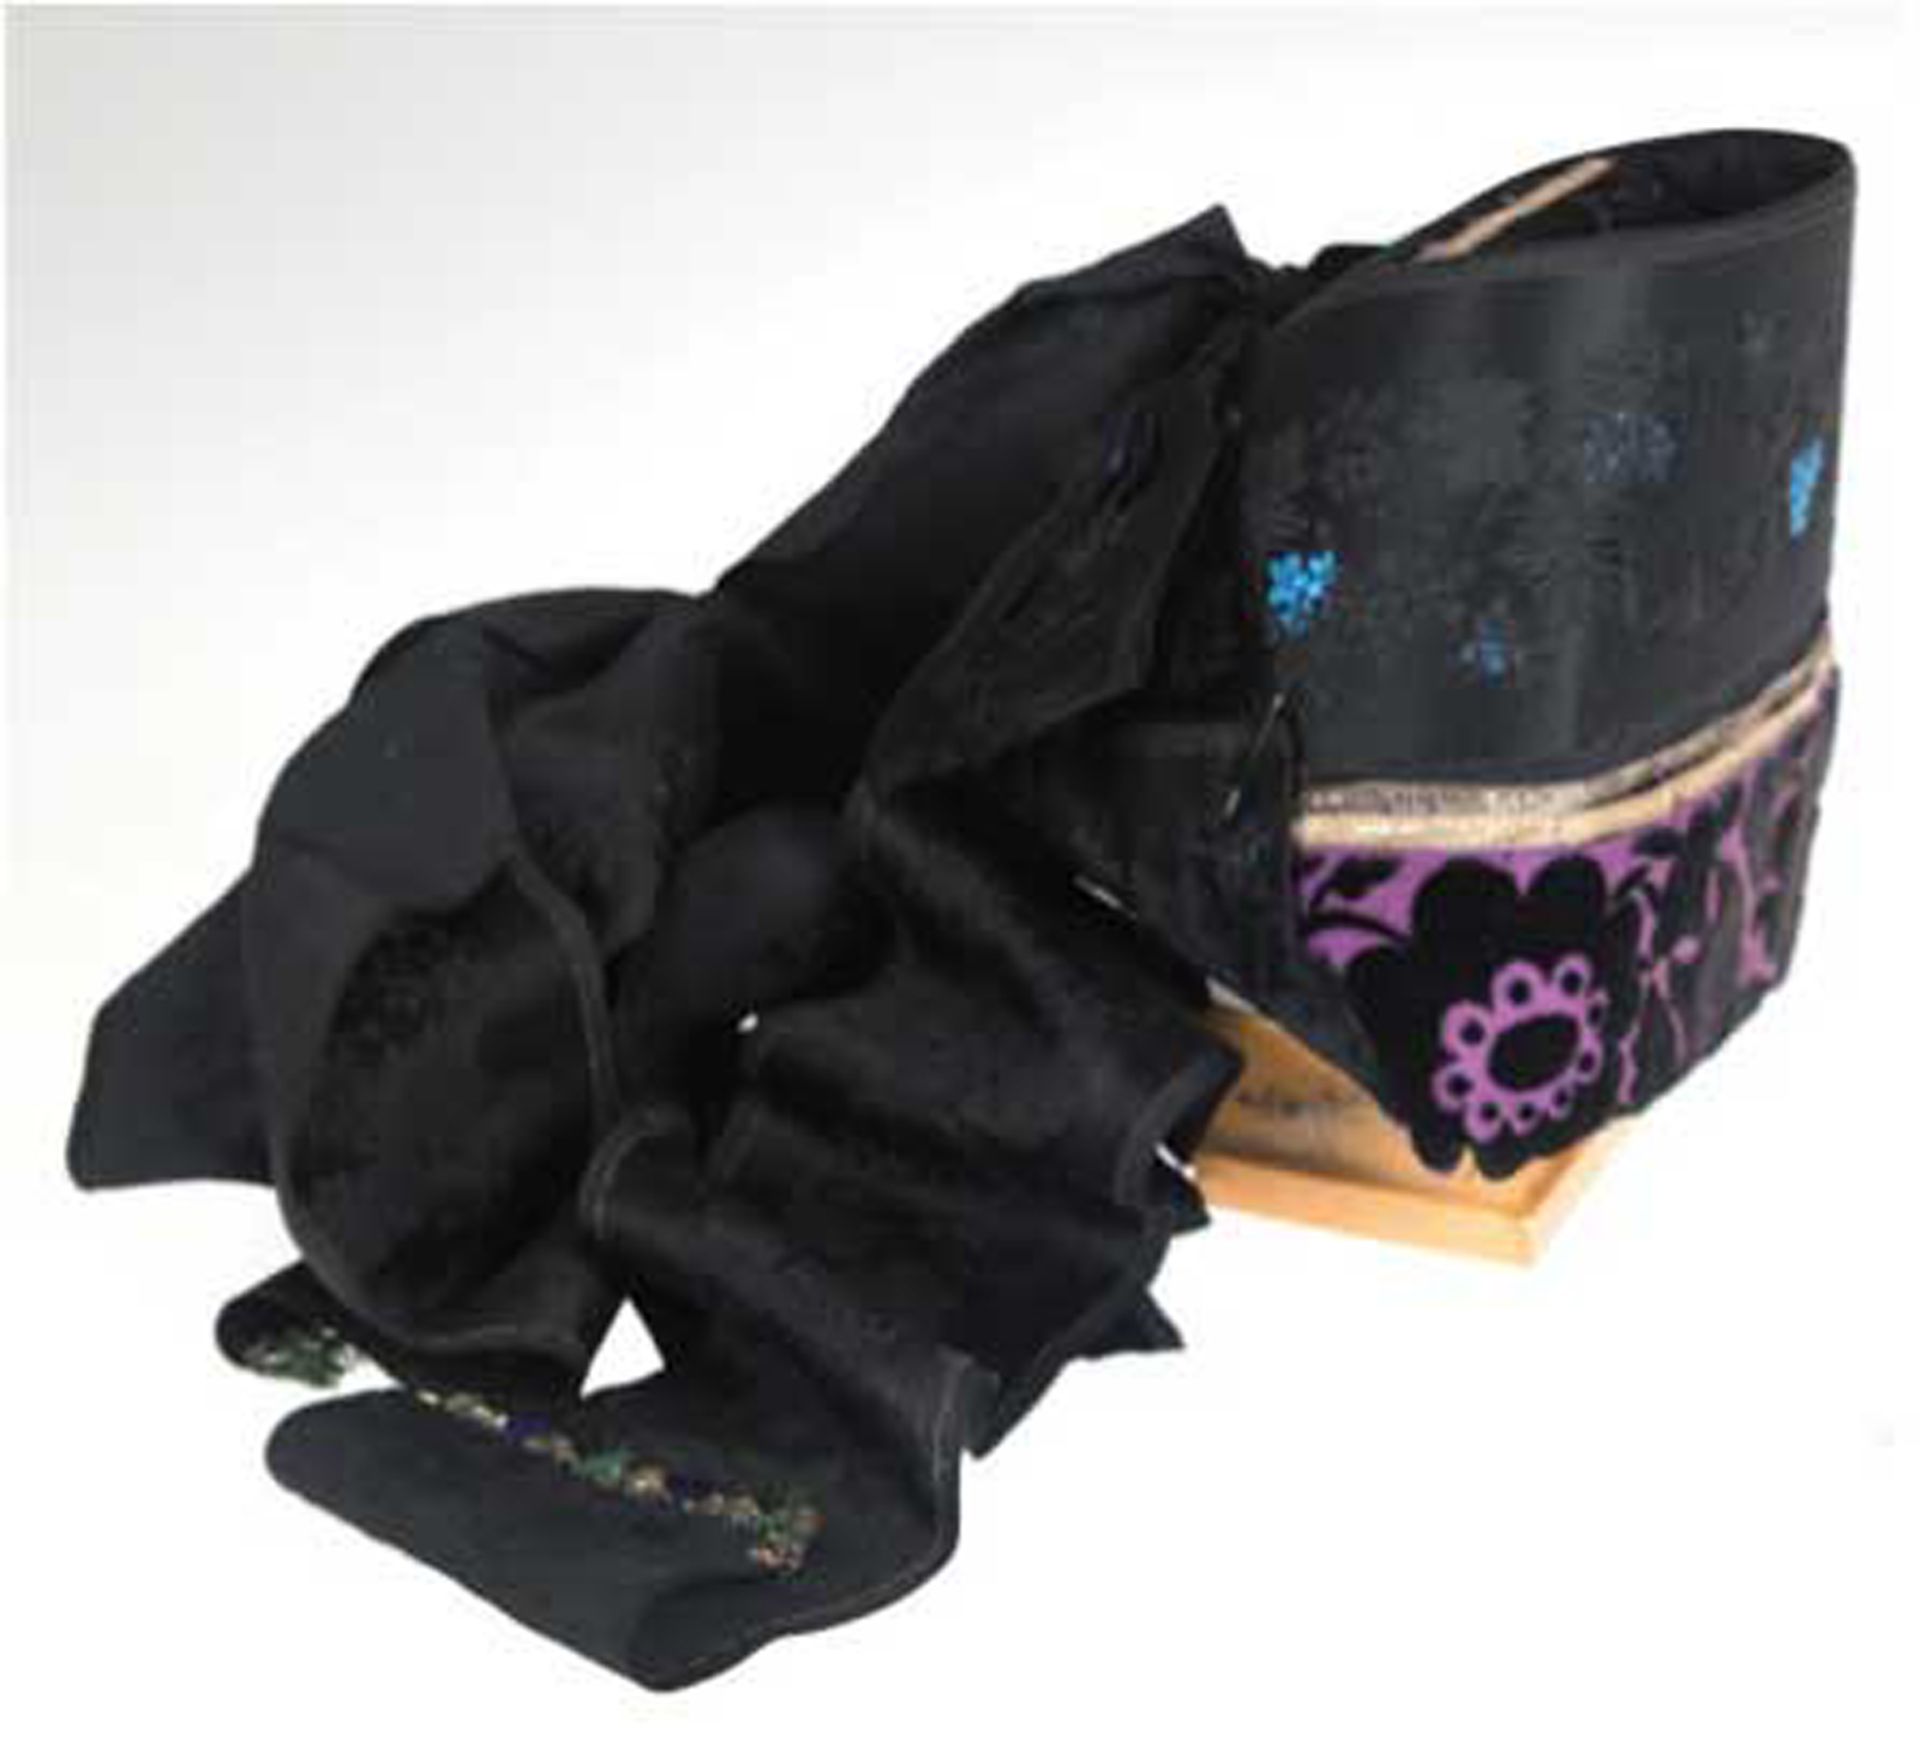 Trachtenkappe, schwarzer Stoff, Kappenrand lilafarben mit schwarzen Blüten, rückseitig Schleife und